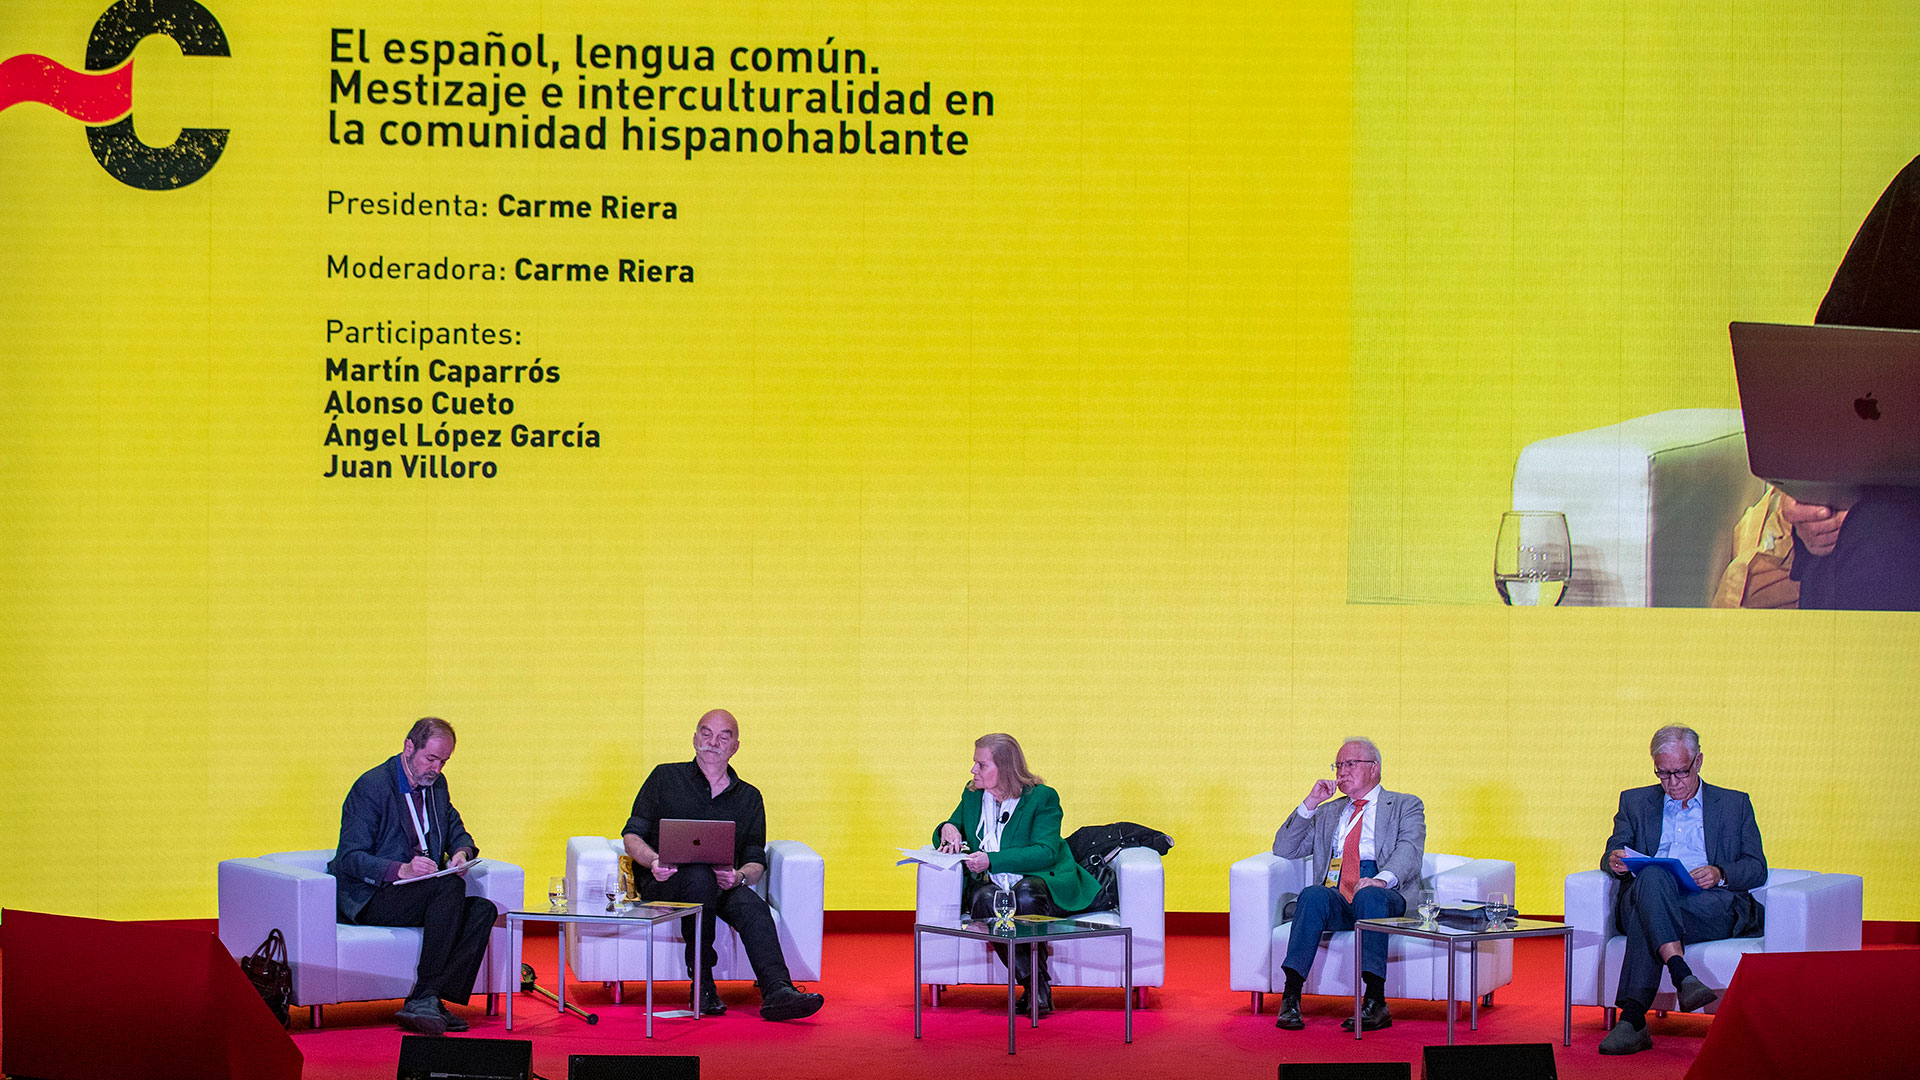 La académica Carme Riera (al centro) modera la mesa de debate el "El español, lengua común: Mestizaje e interculturalidad en la comunidad hispanohablante" Foto: EFE/Román Ríos)
